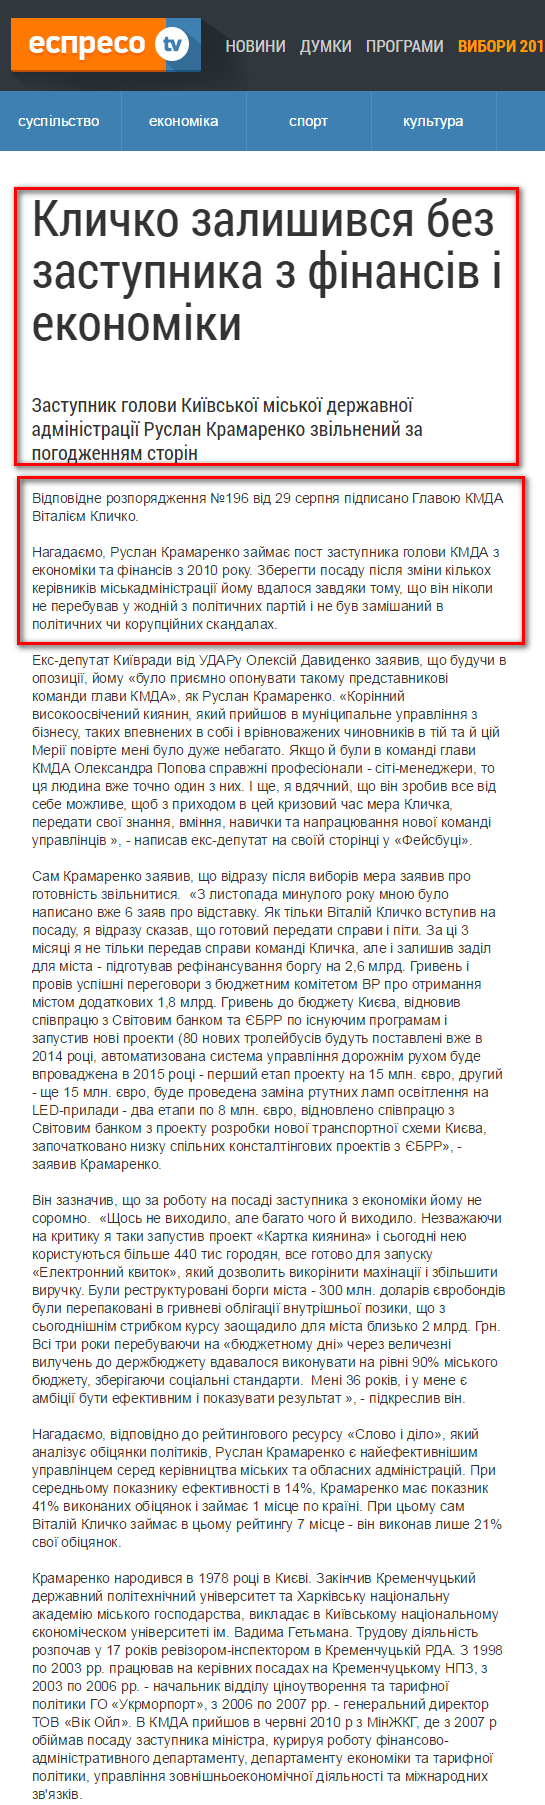 http://espreso.tv/news/2014/09/02/klychko_zalyshyvsya_bez_zastupnyka_z_finansiv_i_ekonomiky